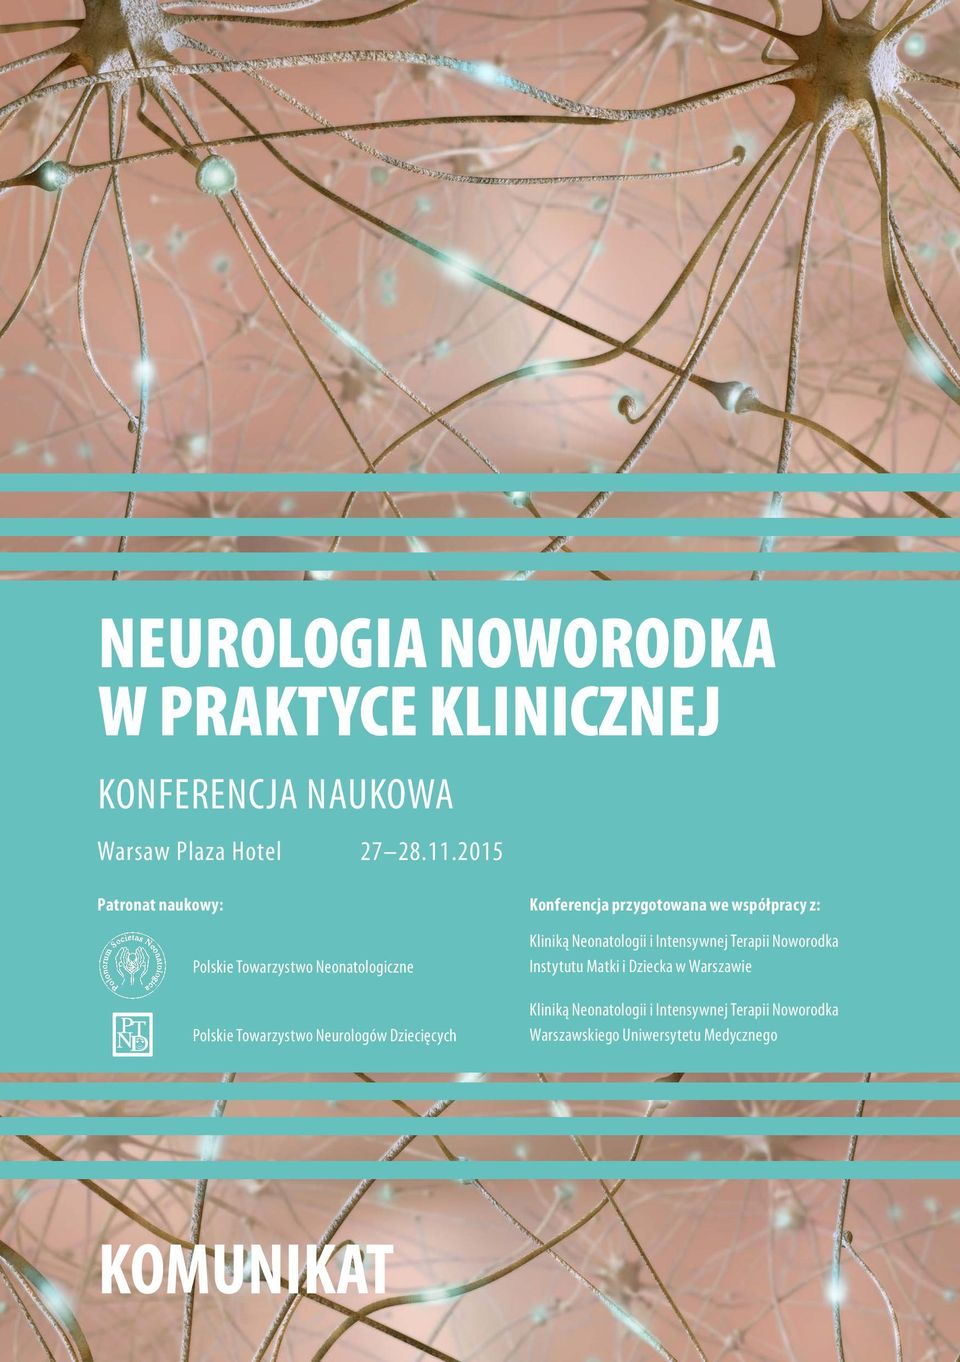 Konferencja przygotowana we współpracy z: Kliniką Neonatologii i Intensywnej Terapii Noworodka Instytutu